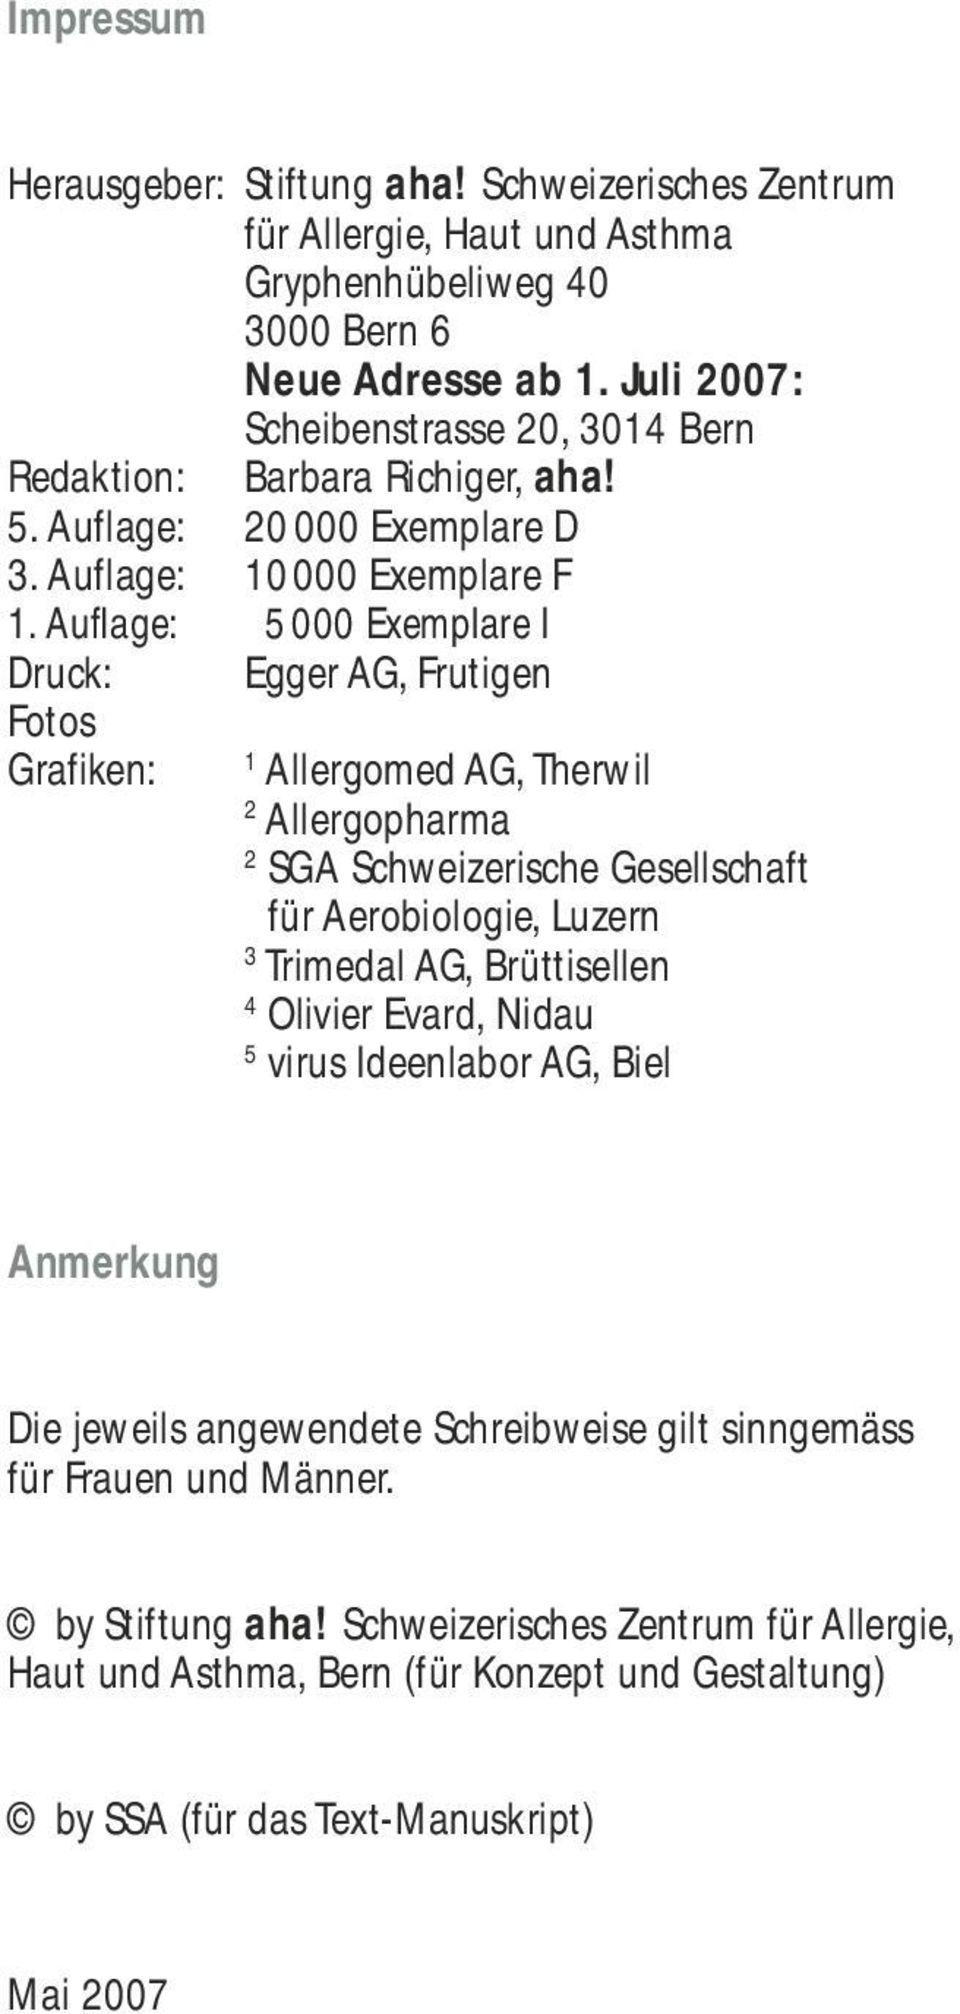 Aufl age: 5000 Exemplare I Druck: Fotos Grafiken: Egger AG, Frutigen 1 Allergomed AG, Therwil 2 Allergopharma 2 SGA Schweizerische Gesellschaft 2 für Aerobiologie, Luzern 3 Trimedal AG,